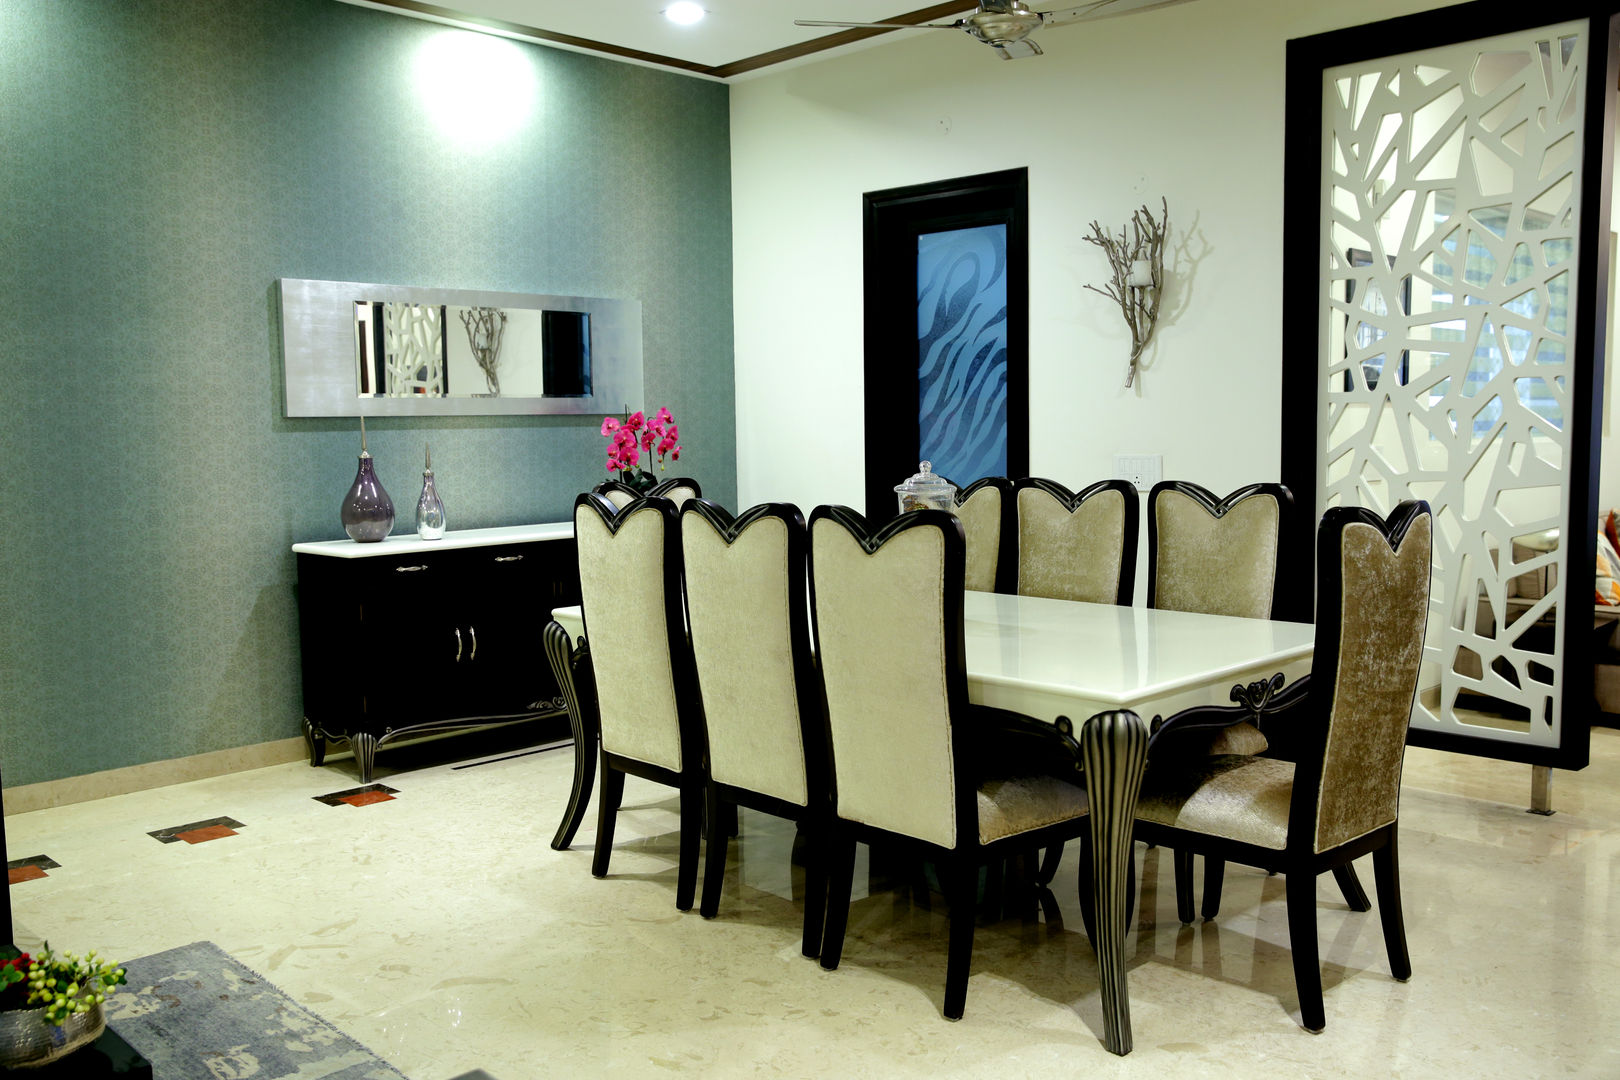 Residence, renu soni interior design renu soni interior design Comedores modernos Accesorios y decoración